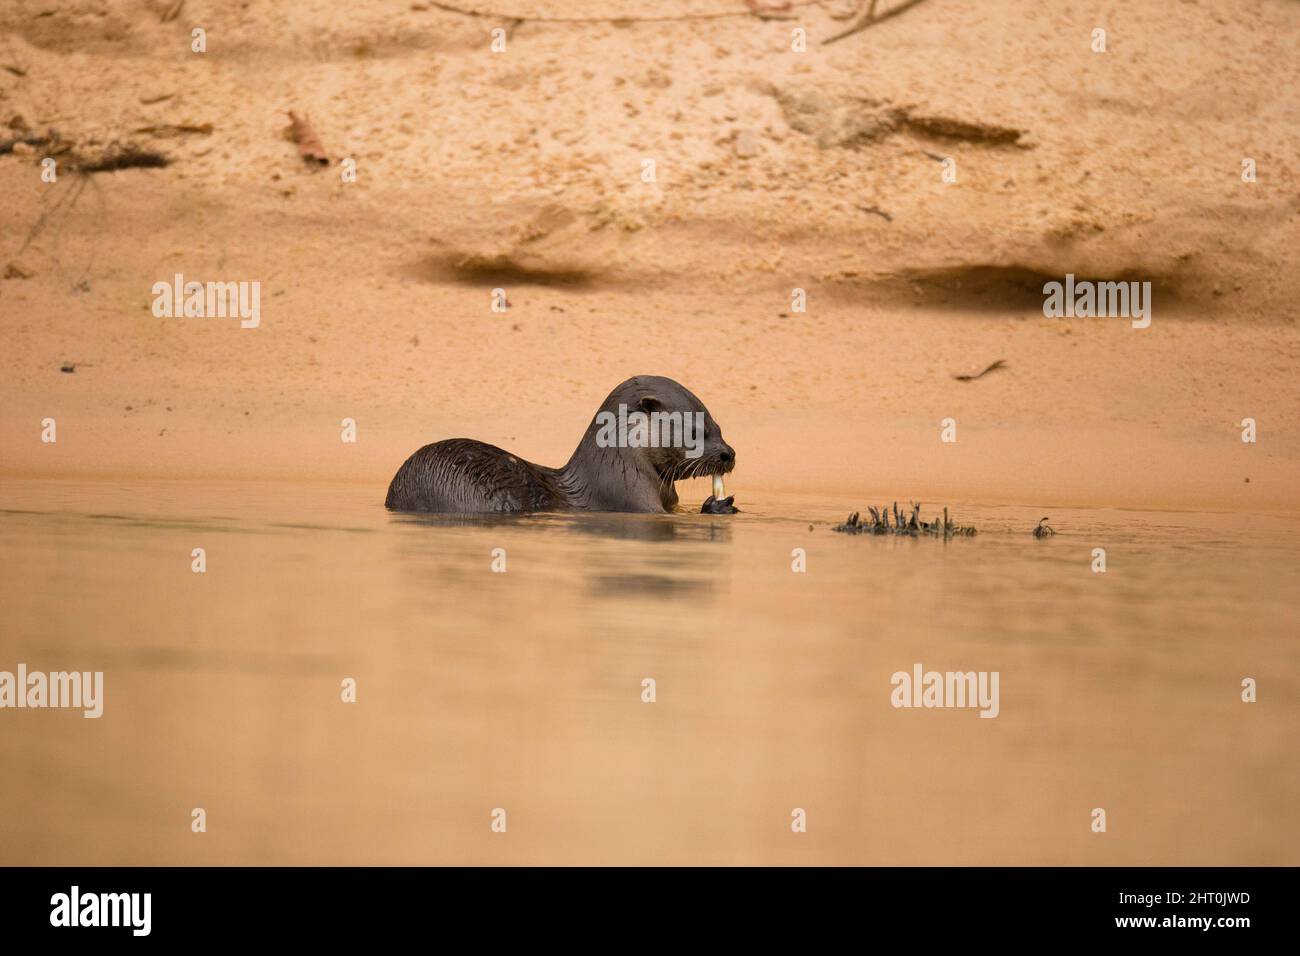 Lontra neotropico (Lontra longicaudis) che mangia pesce appena pescato in baracche da riva del fiume. Pantanal, Mato Grosso, Brasile Foto Stock